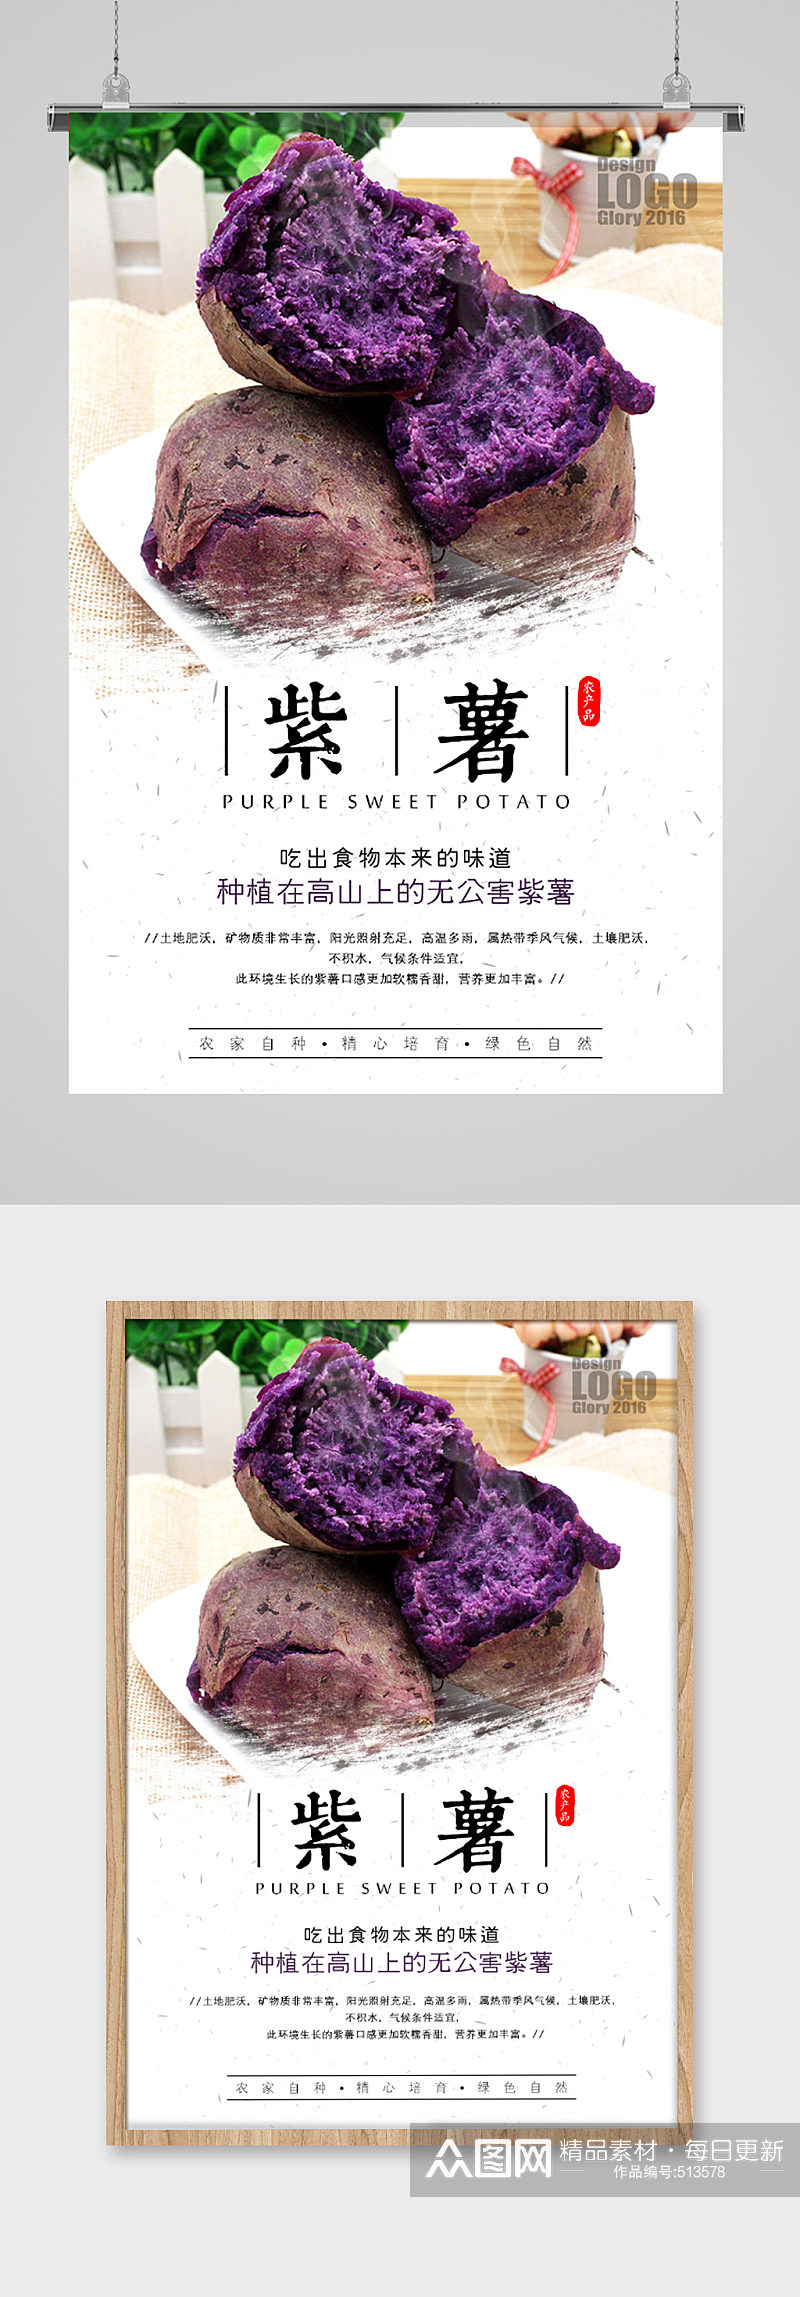 紫薯美食产品海报素材